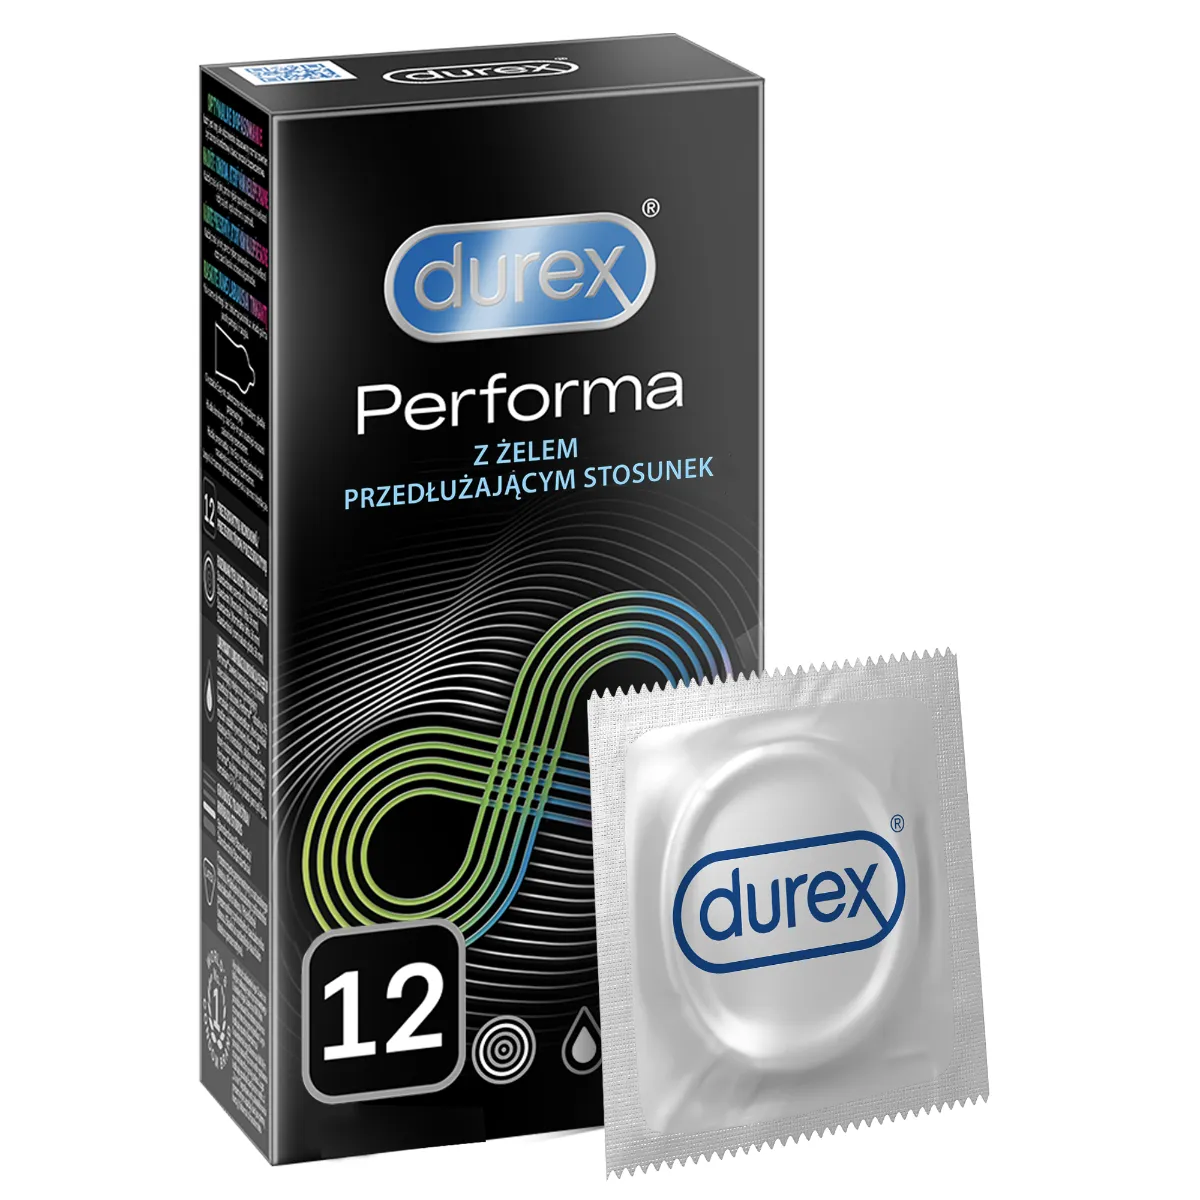 Prezerwatywy Durex Performa, 12 szt. 